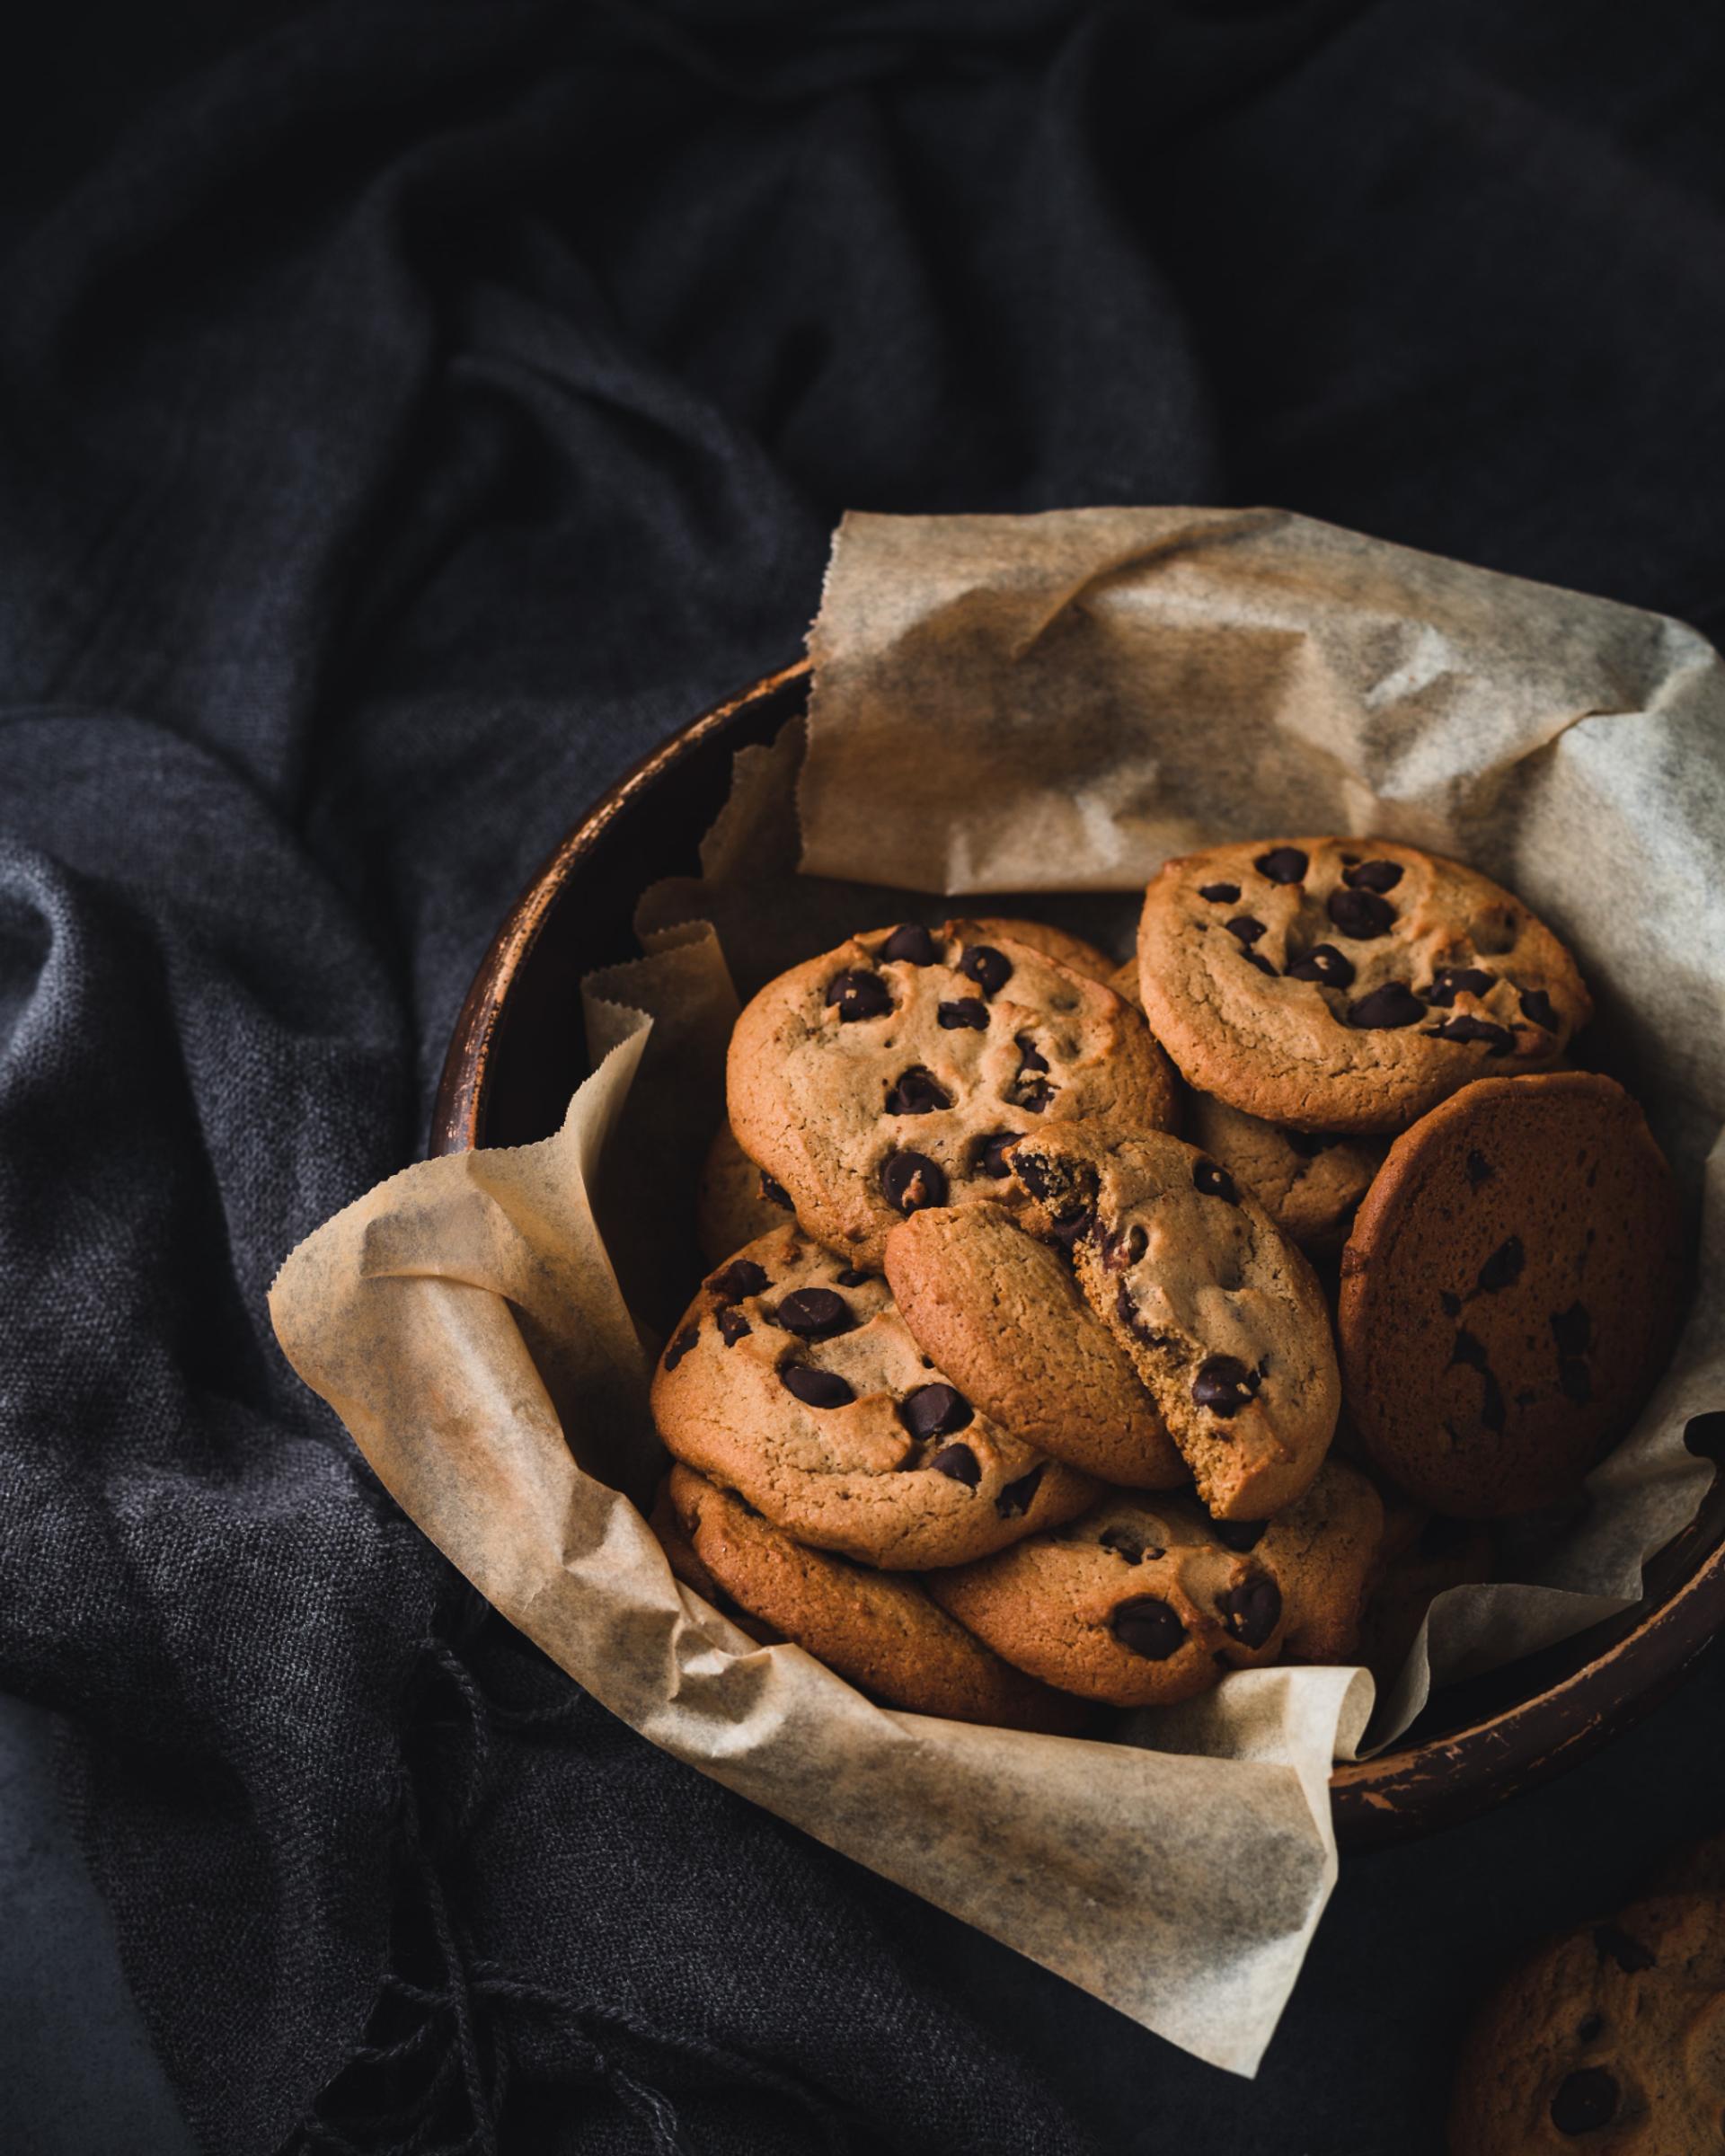 Bowl de galletas y receta simple de galletas con chispas de chocolate. Son de los mejores postres para restaurantes de comida rápida